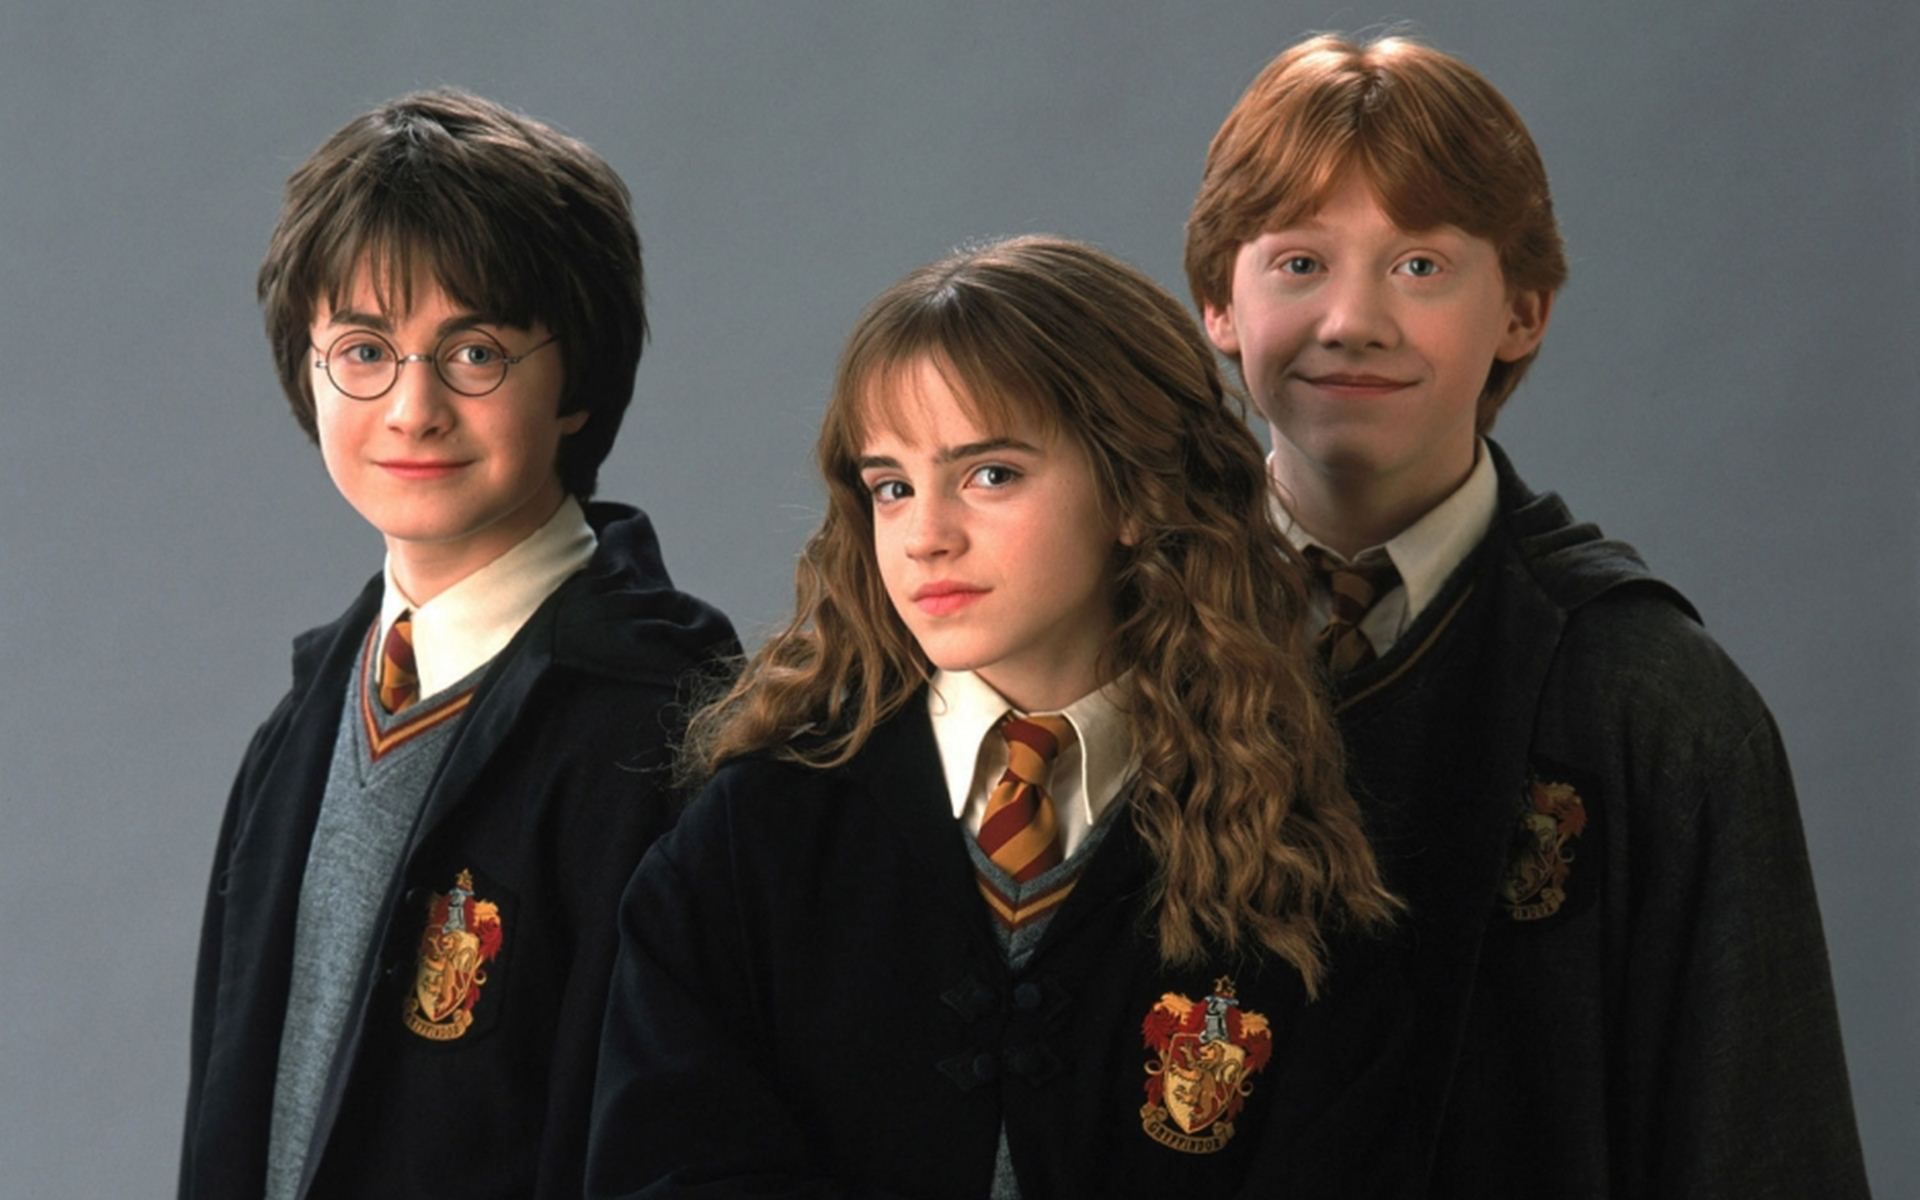 19 indok, amiért újra akarod olvasni a Harry Potter-könyveket